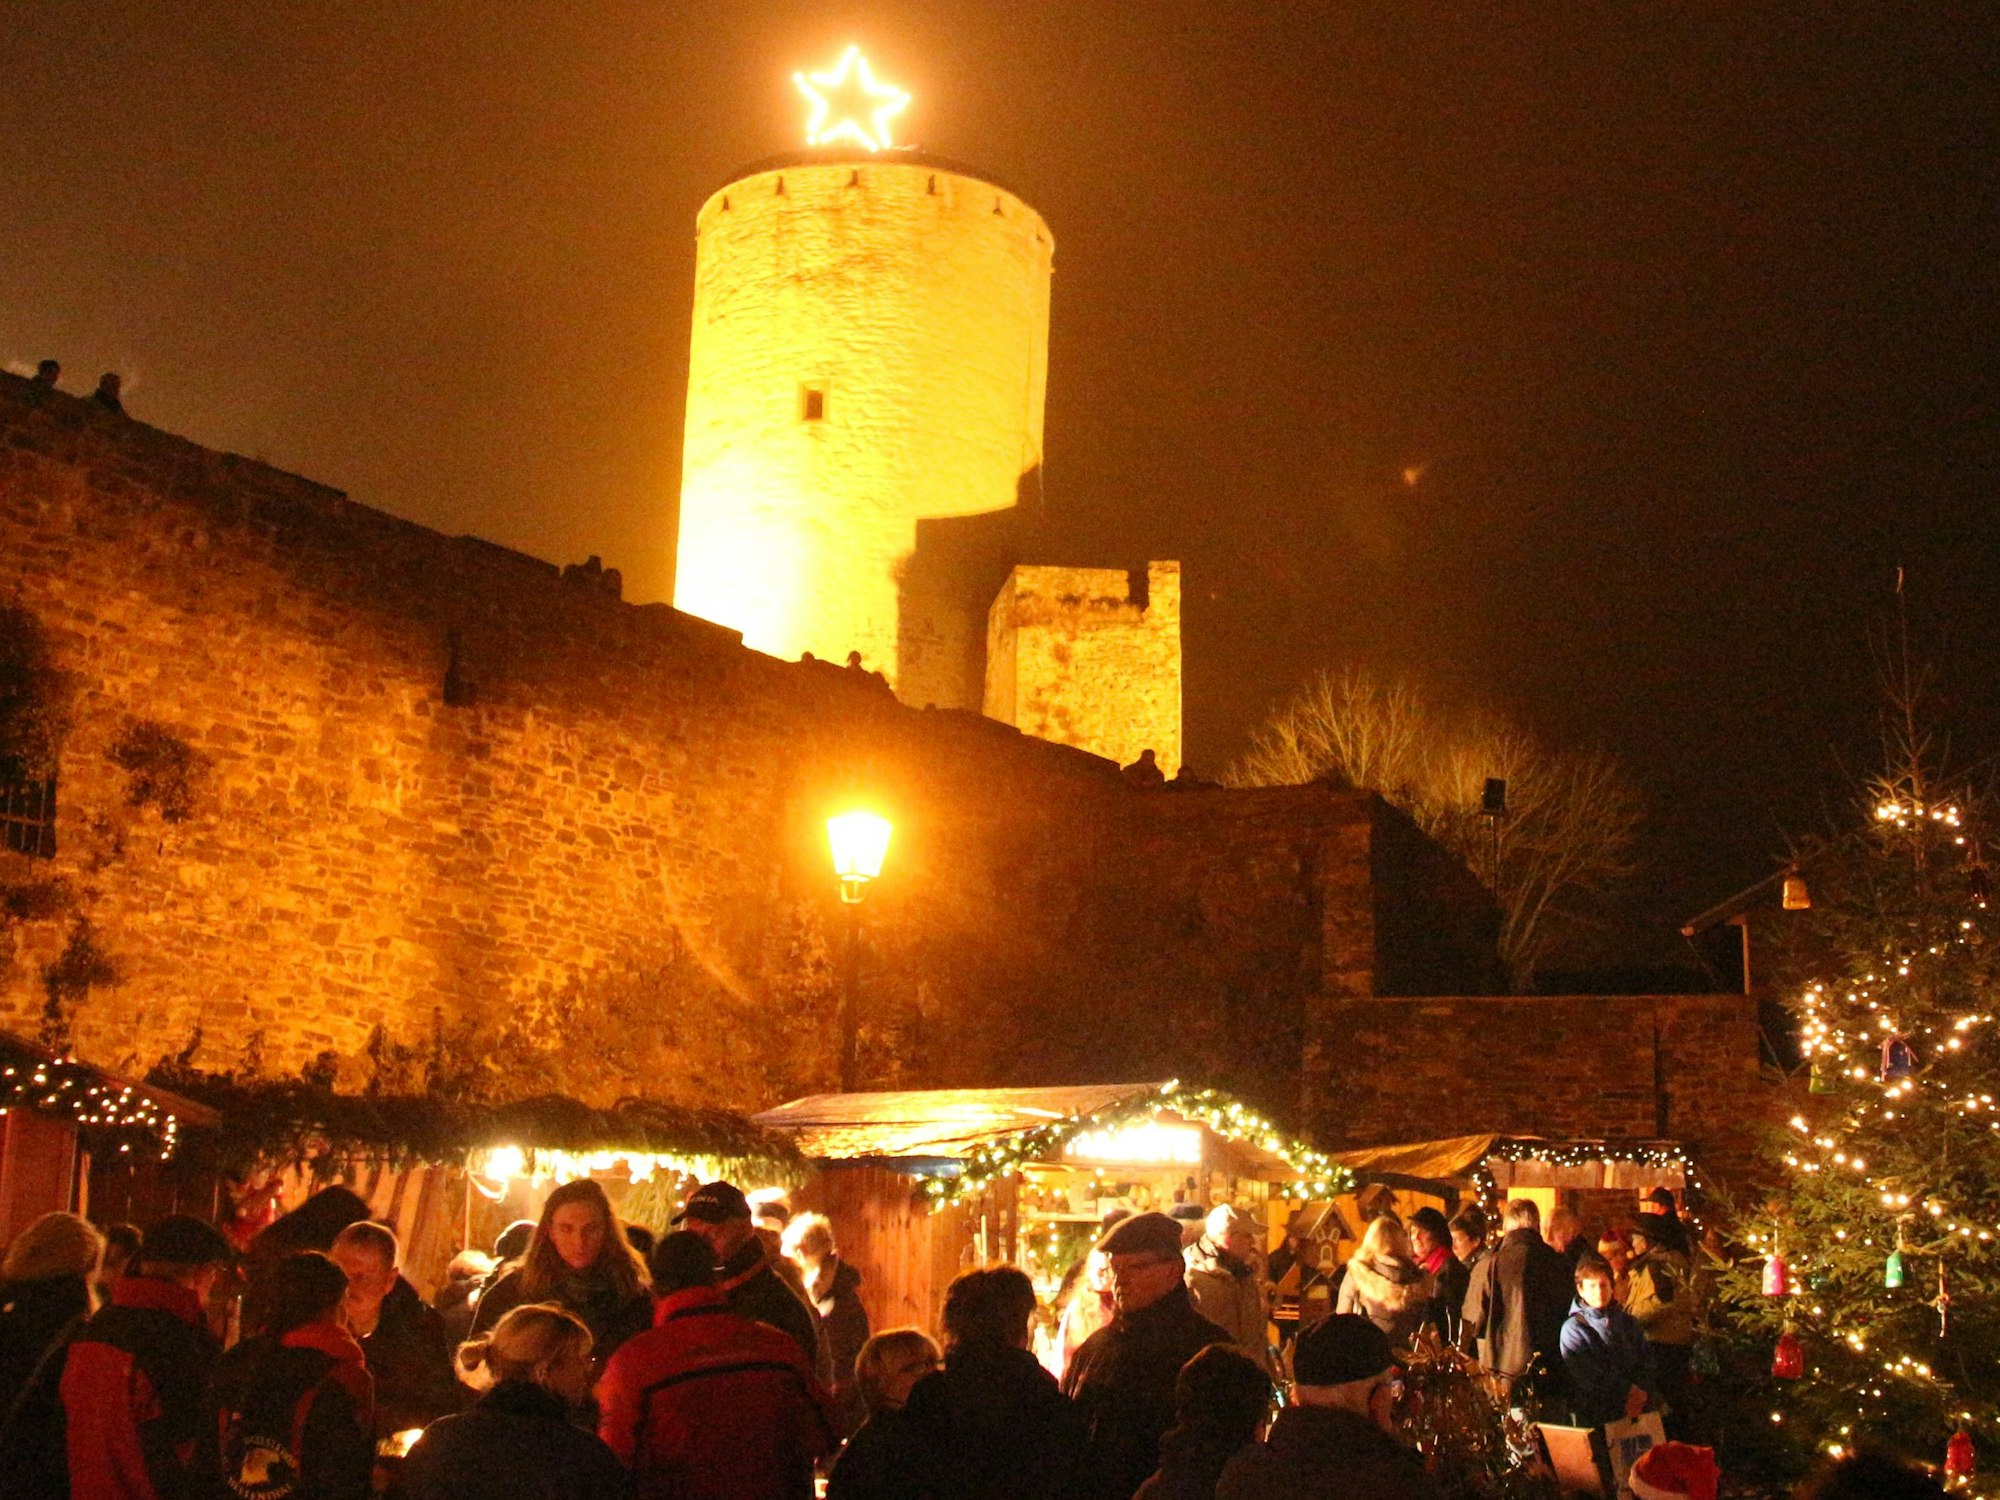 Vor mittelalterlicher Kulisse: Der Weihnachtsmarkt Burg Reifferscheid, Eifel